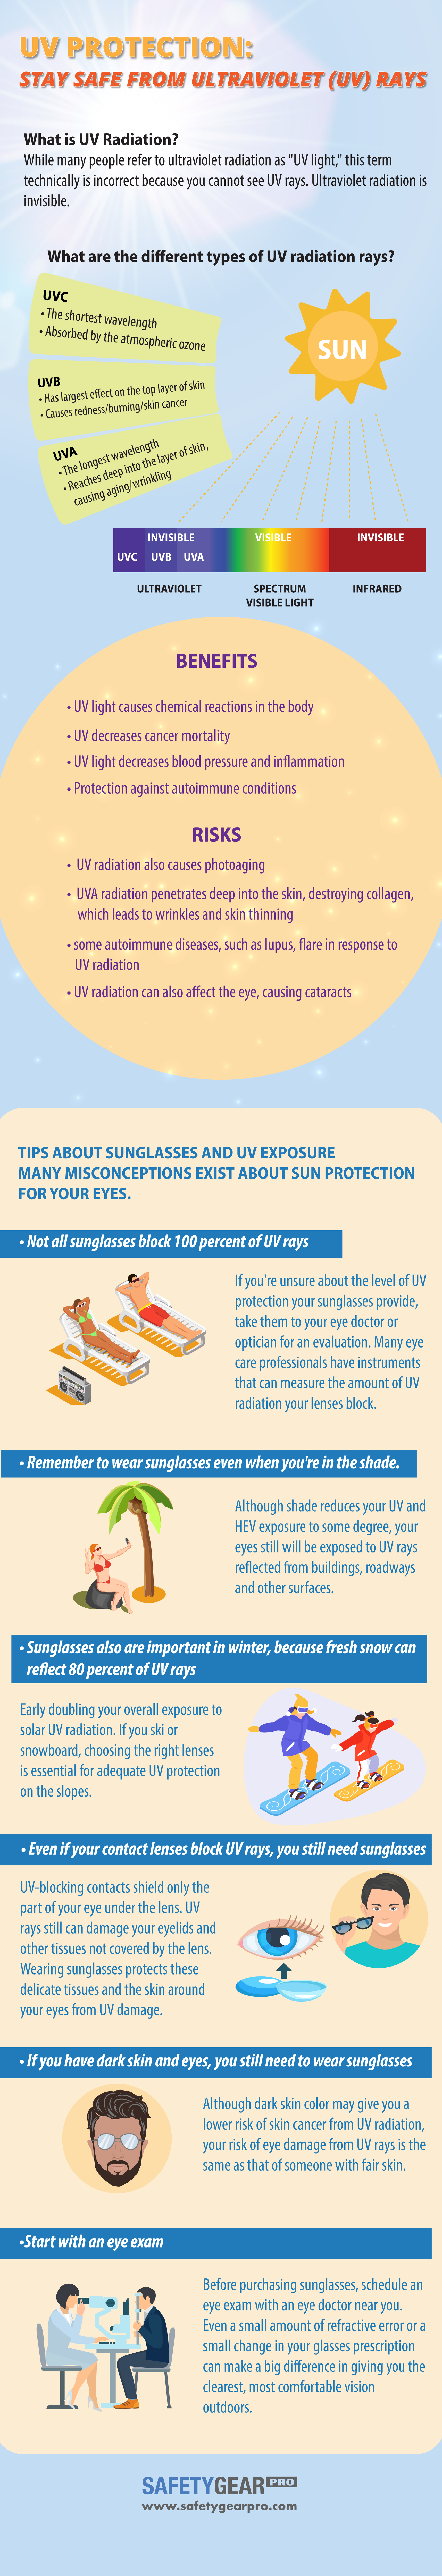 UV ochrana. UVA, UVB, UVC záření. ochrana proti slunečnímu záření, UV záření.